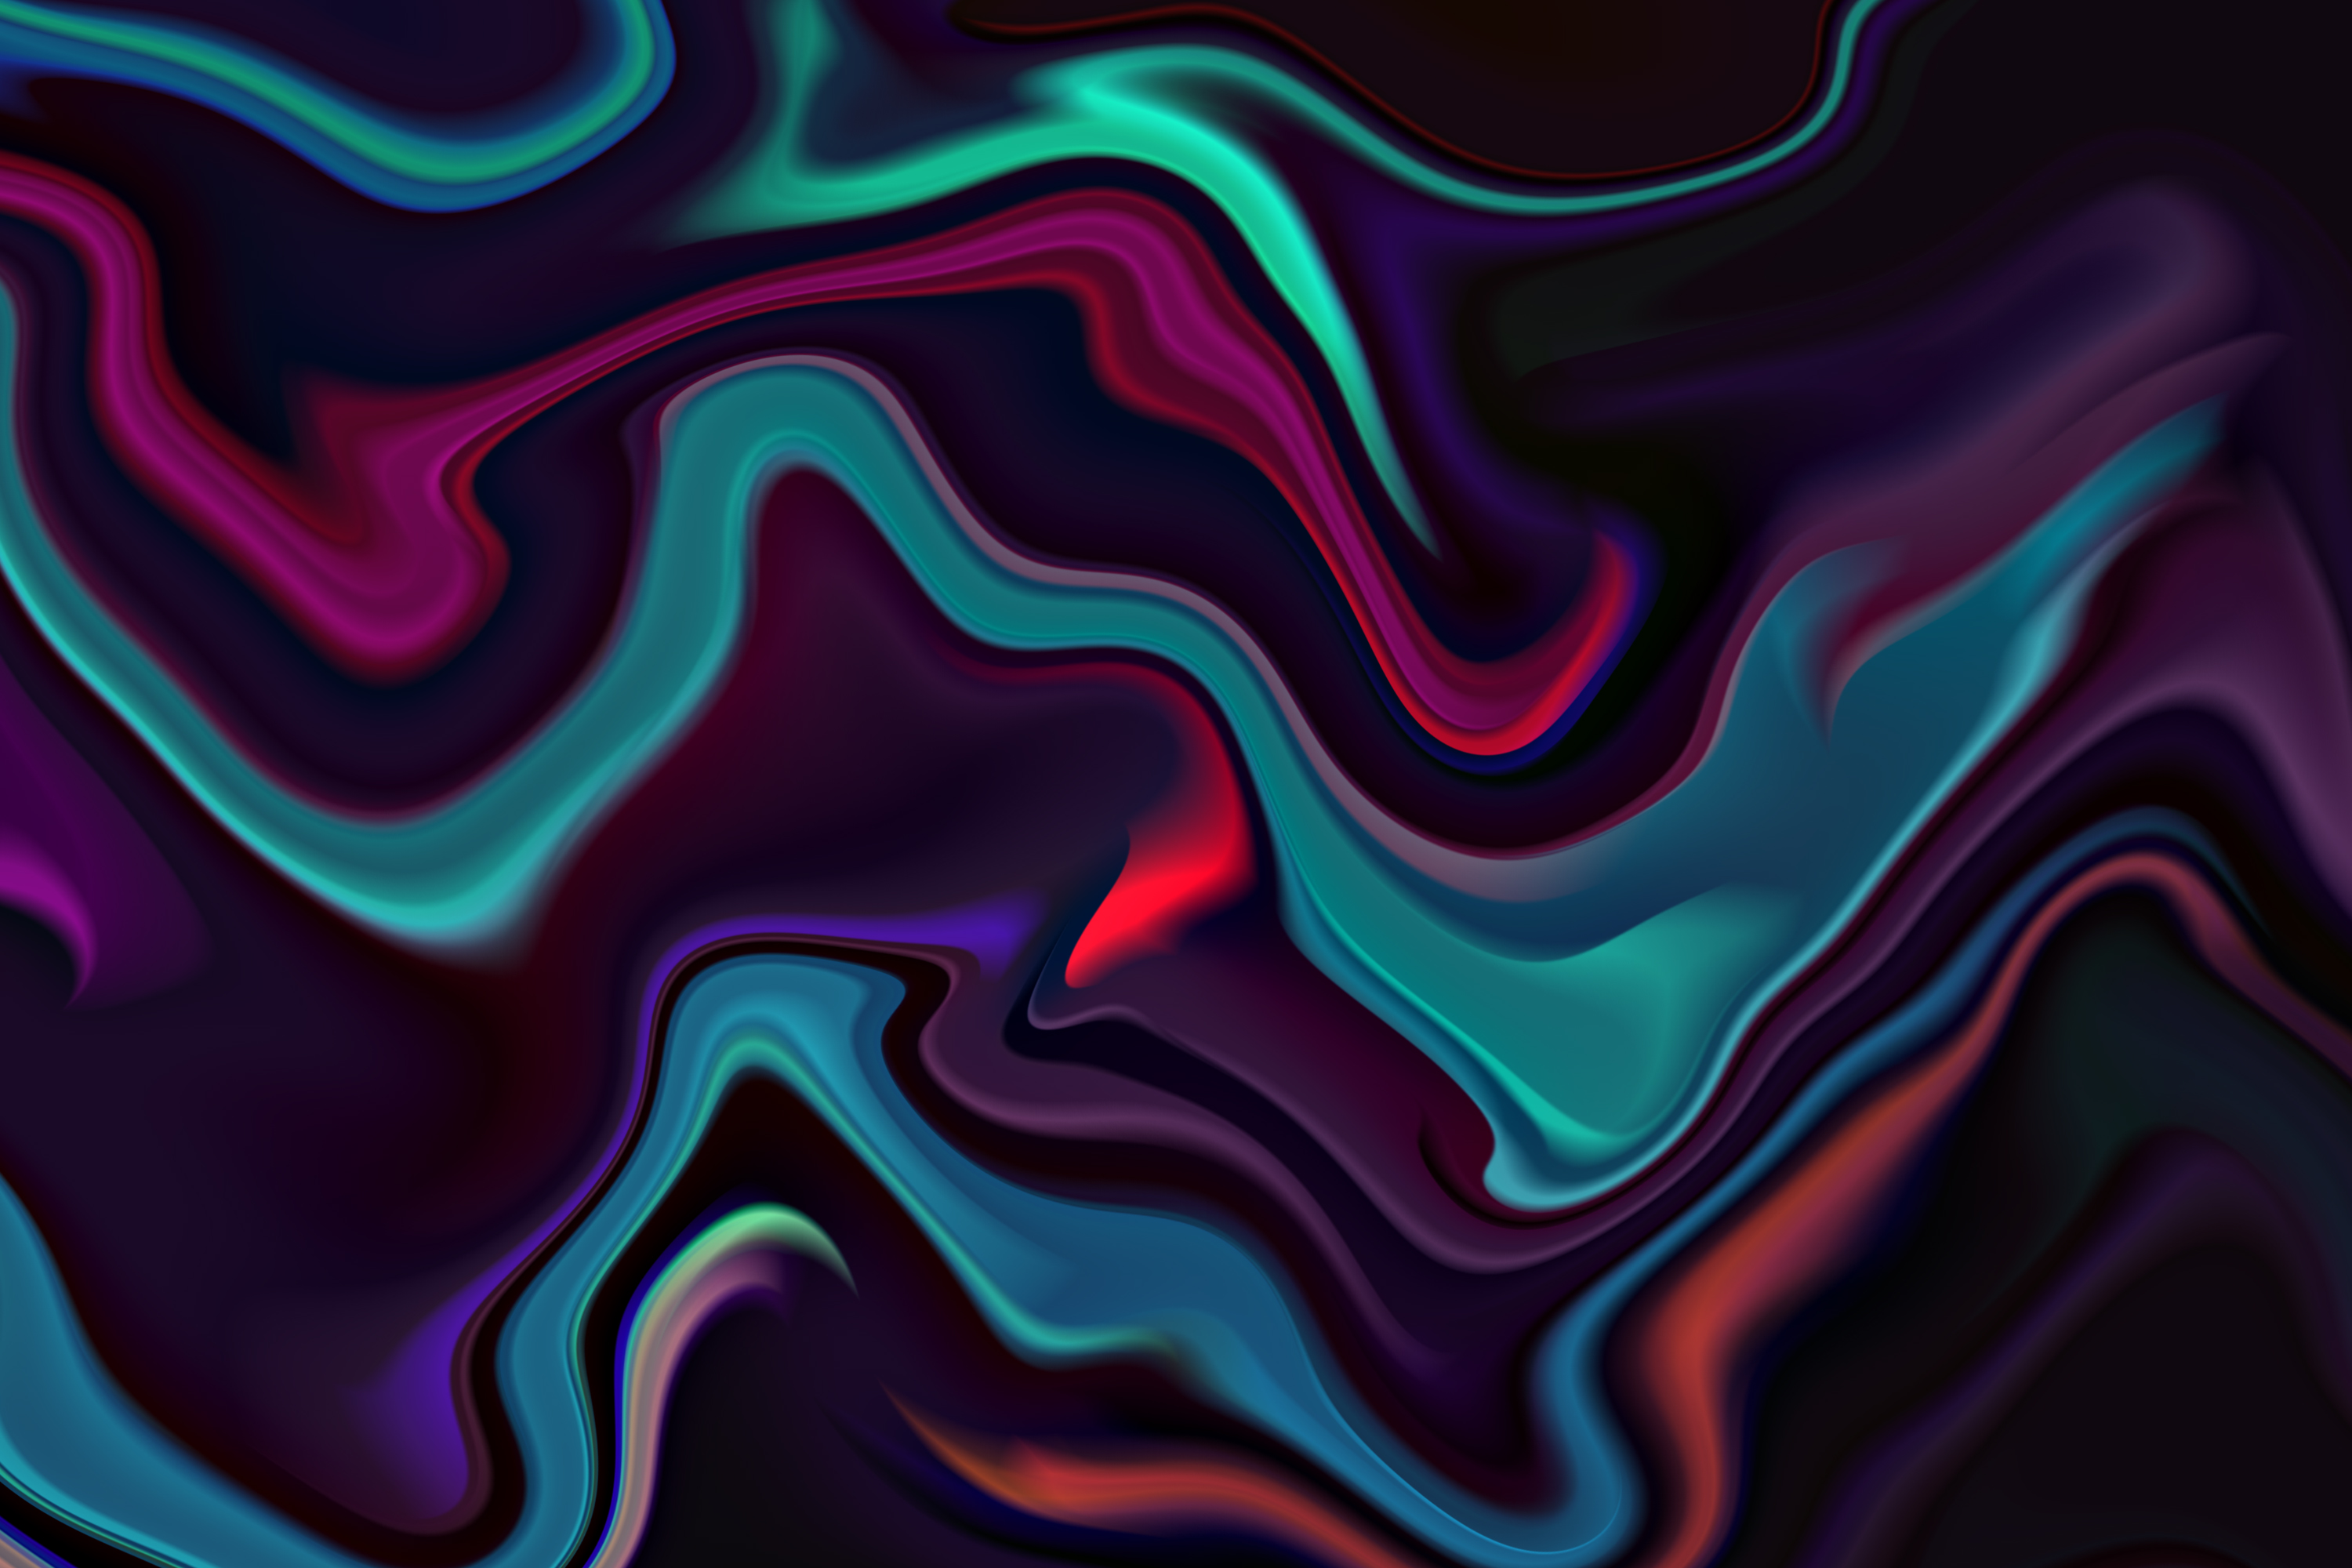 24款抽象波浪油漆流体海报设计背景纹理图片素材Liquid Colorful Abstract Backgrounds